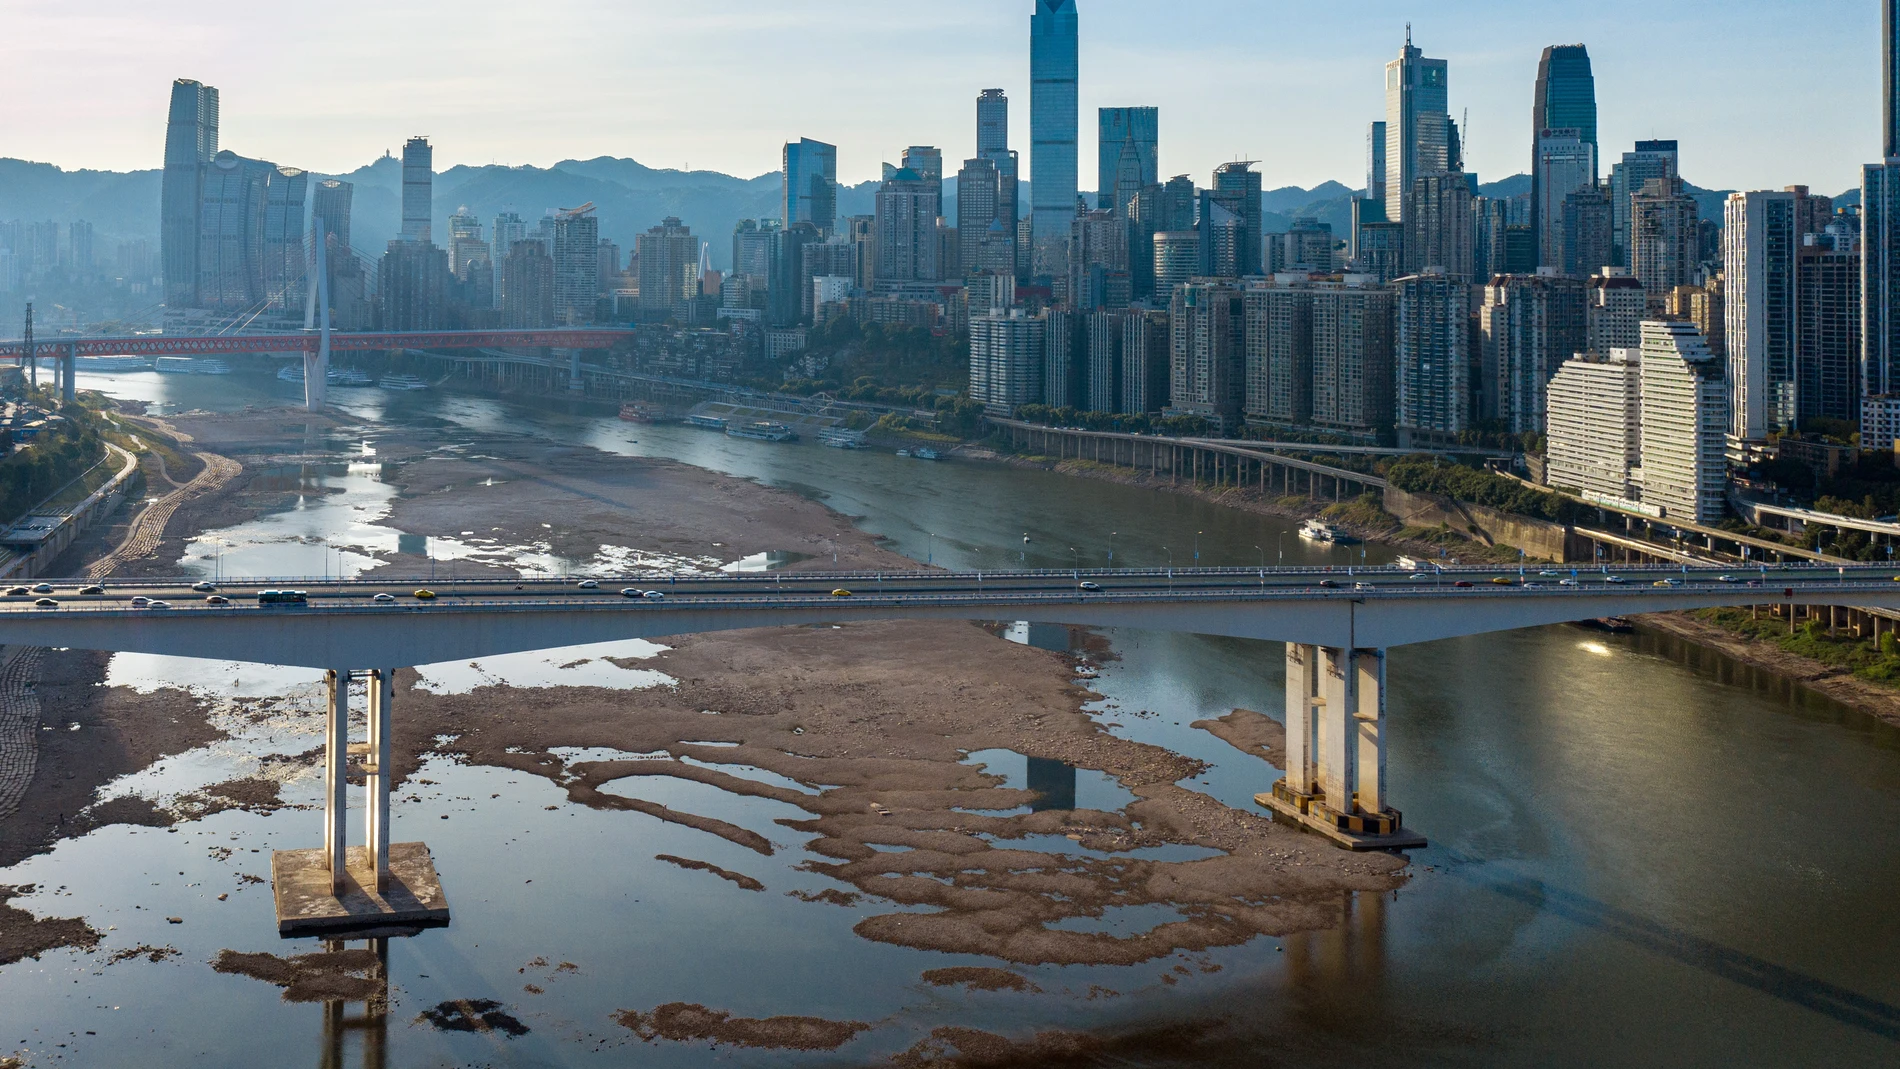 Vista aérea tomada con un dron que muestra el cauce seco del río Jialing, un importante afluente del río Yangtze, en Chongqing